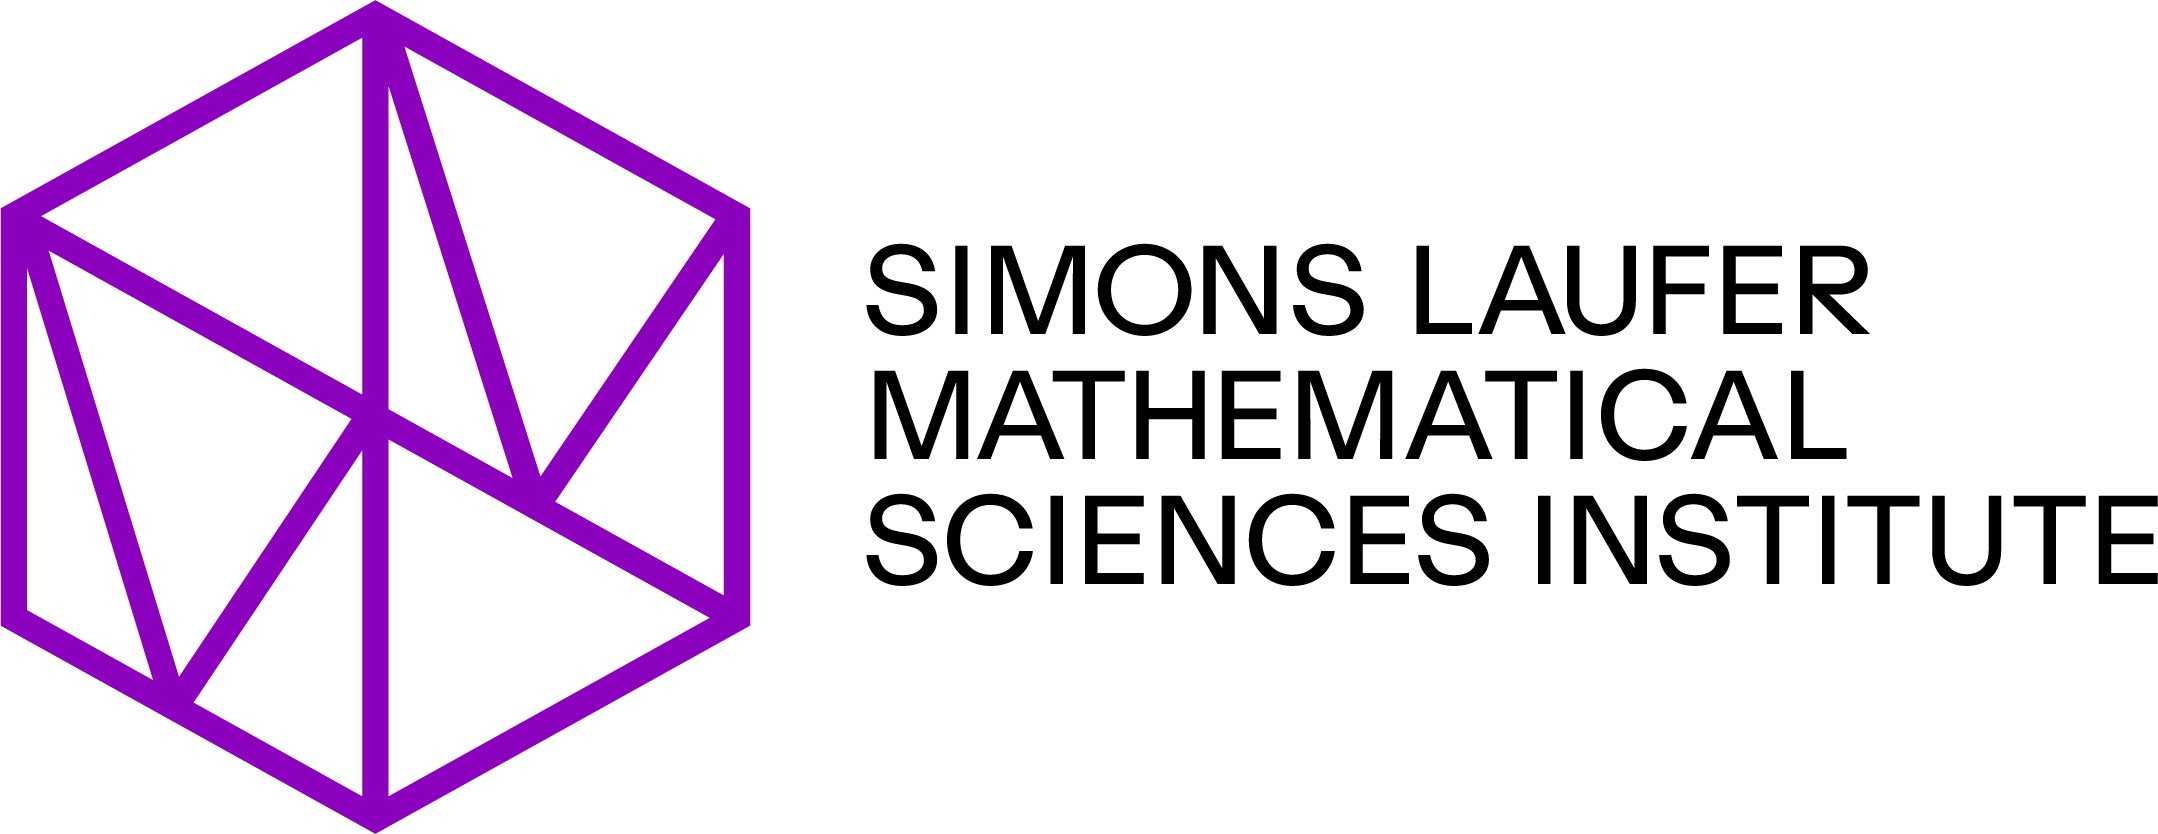 Simons Laufer Mathematical Sciences Institute Lockup.